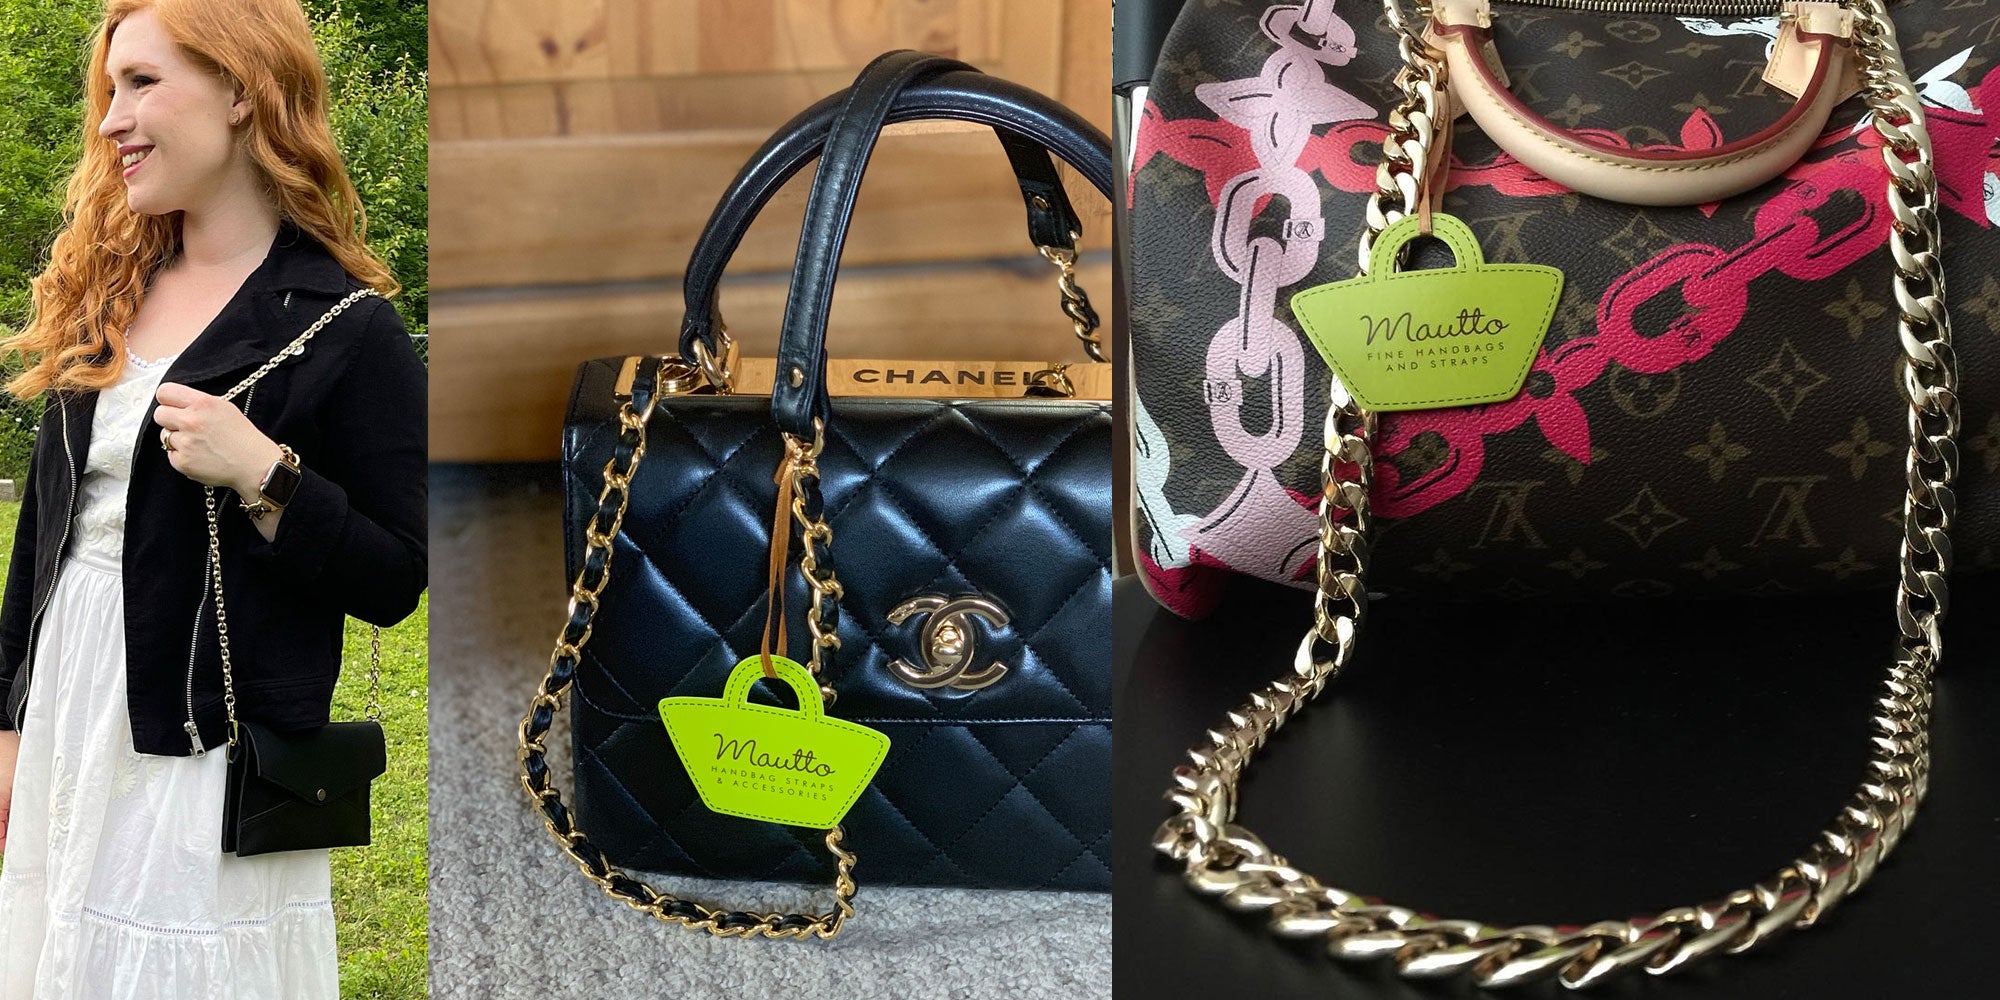 Custom Replacement Straps & Handles for Michael Kors (MK)  Handbags/Purses/Bags